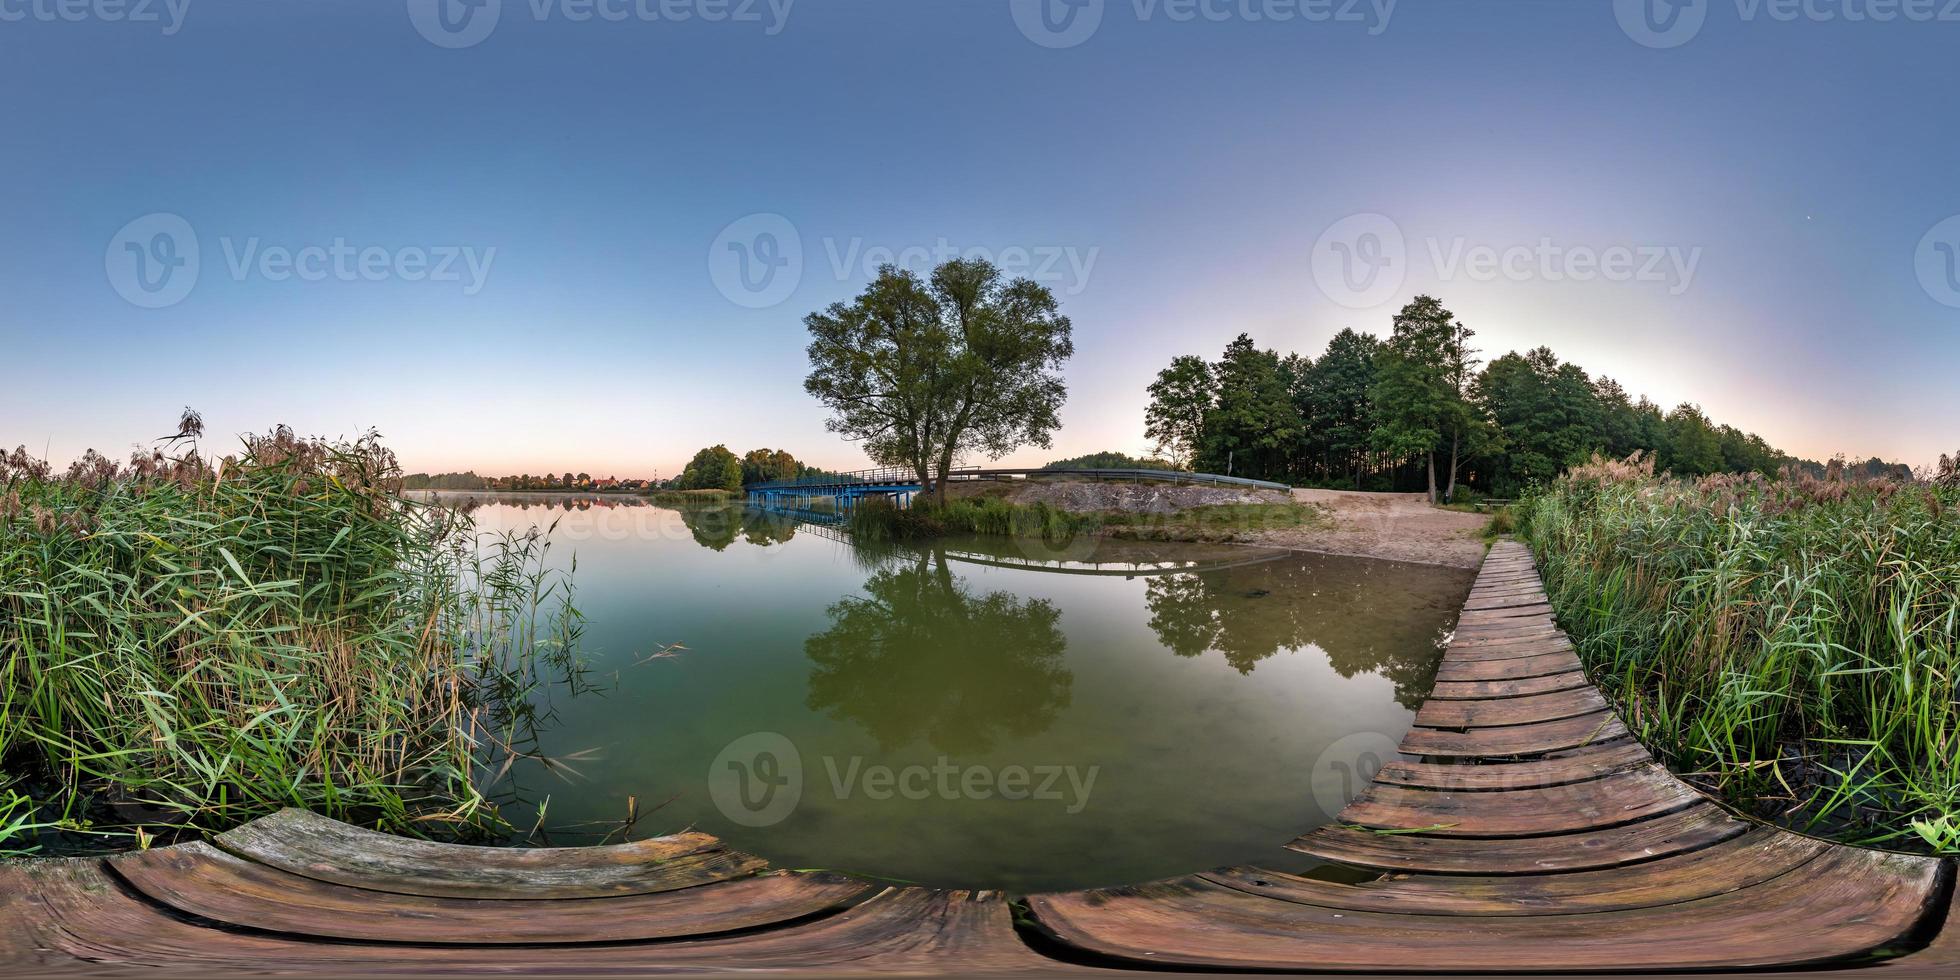 panorama hdri esférico sem costura completo vista de ângulo de 360 graus no cais de madeira do enorme lago ou rio de manhã com nascer do sol rosa com neblina em projeção equirretangular, conteúdo vr foto